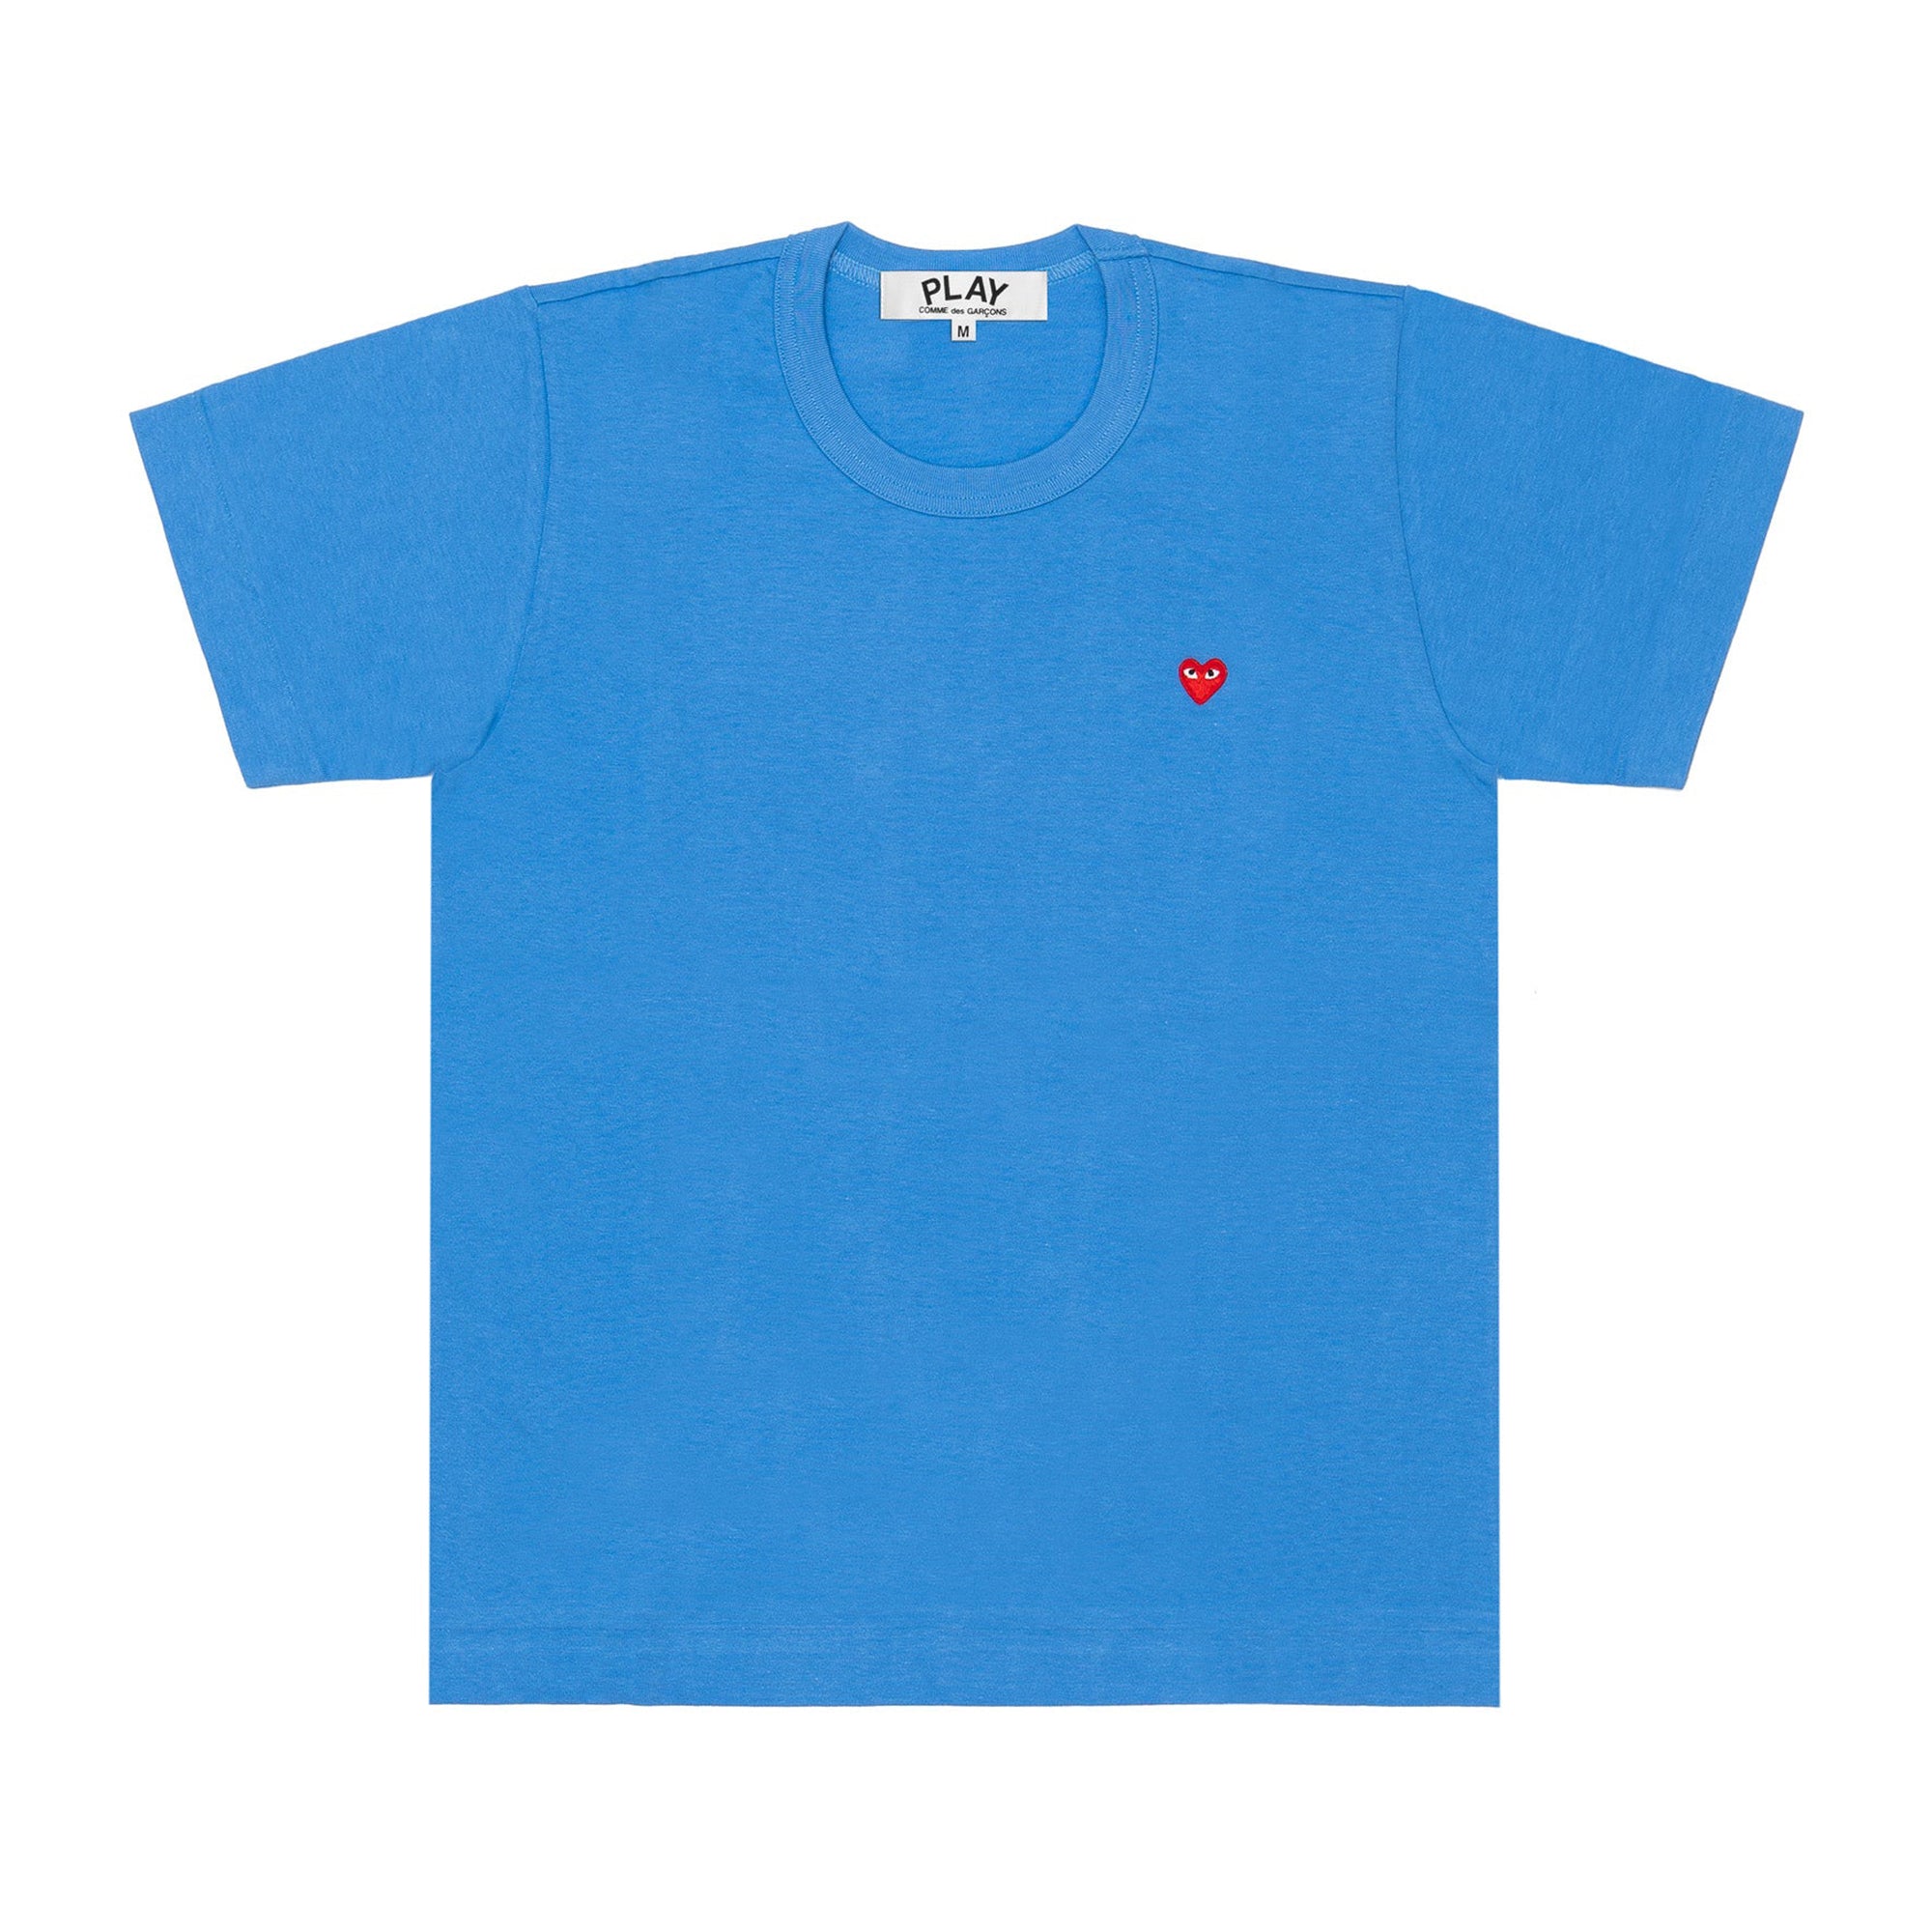 Play Comme des Garçons - Small Heart T-Shirt - (Blue) view 1